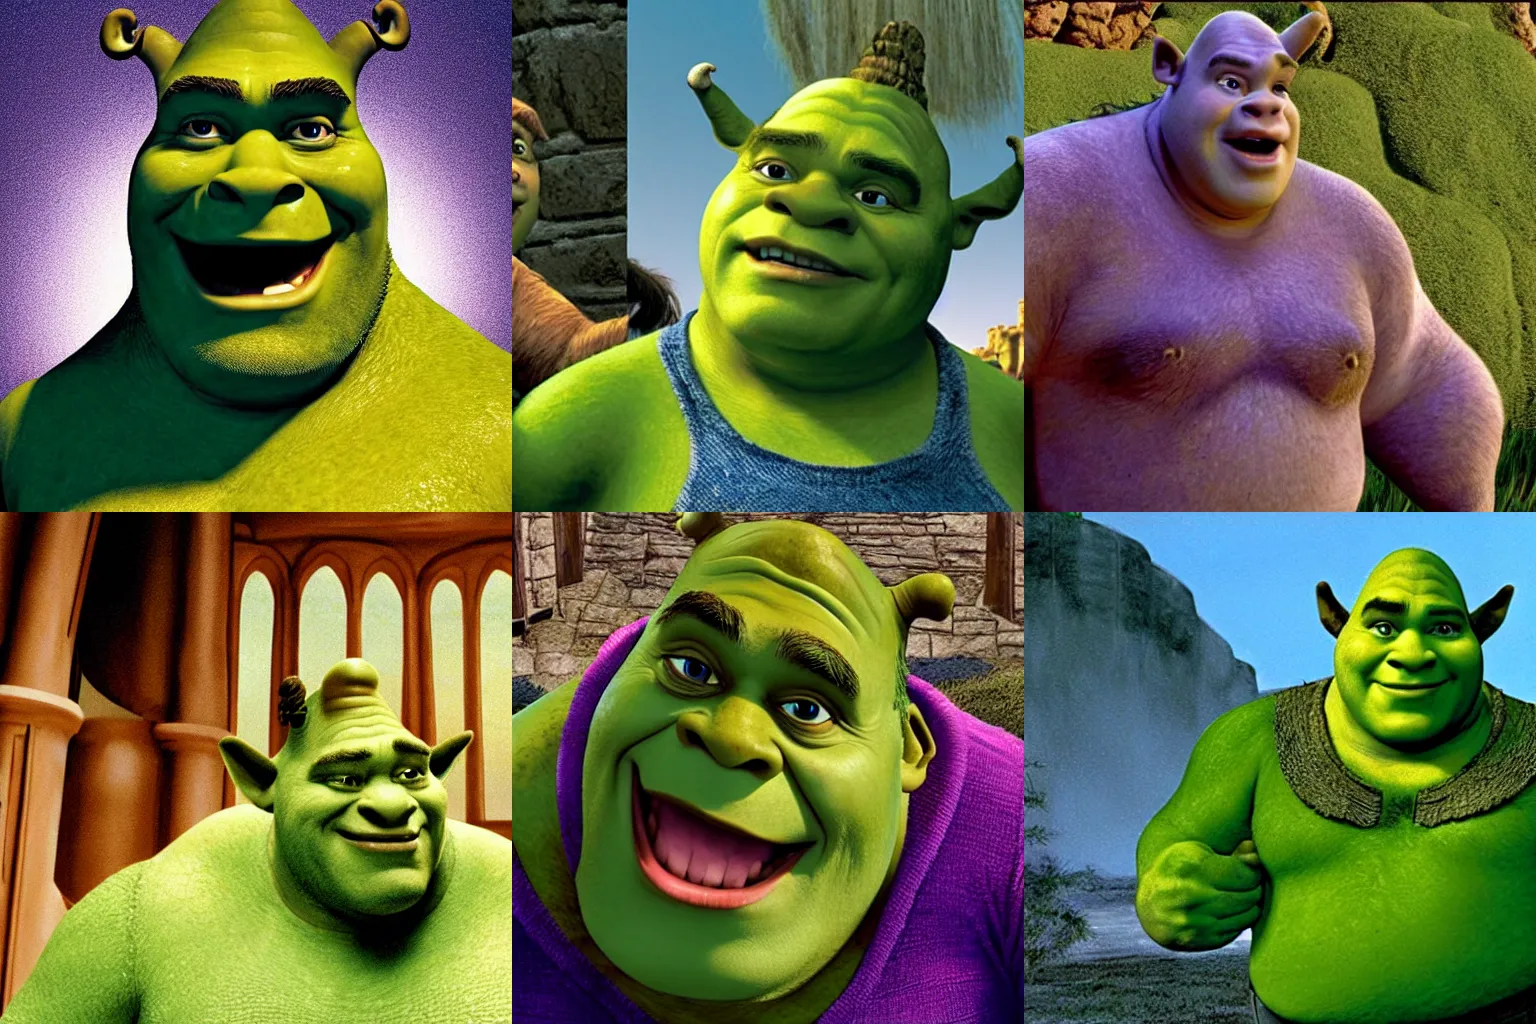 Prompt: Film still of Steve Harwell as Shrek (1997)